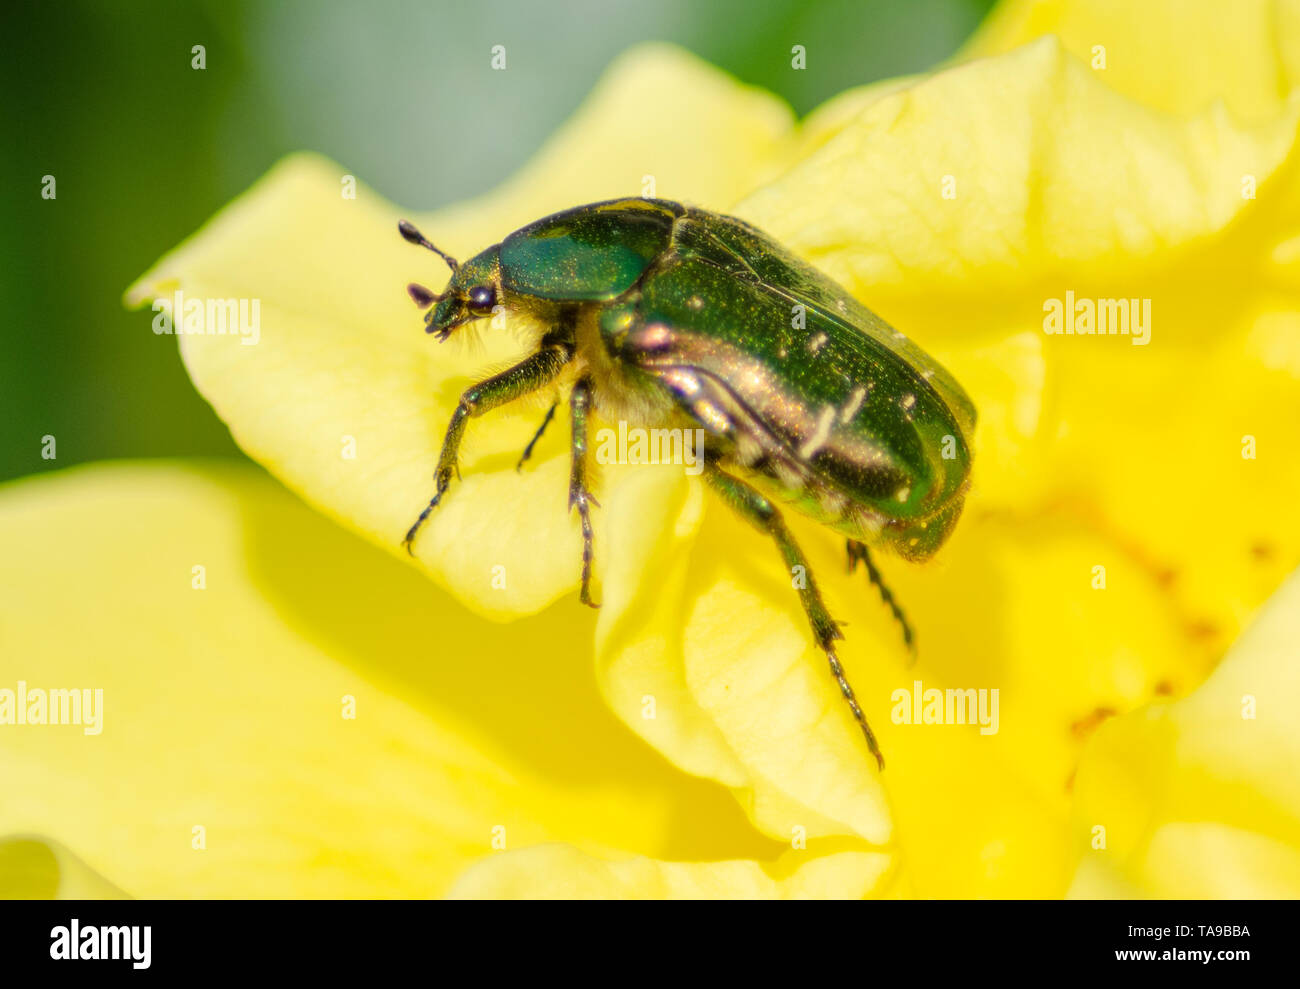 Nahaufnahme von einem grünen Eutopean rose Käfer Käfer auf eine gelbe Rose. Stockfoto